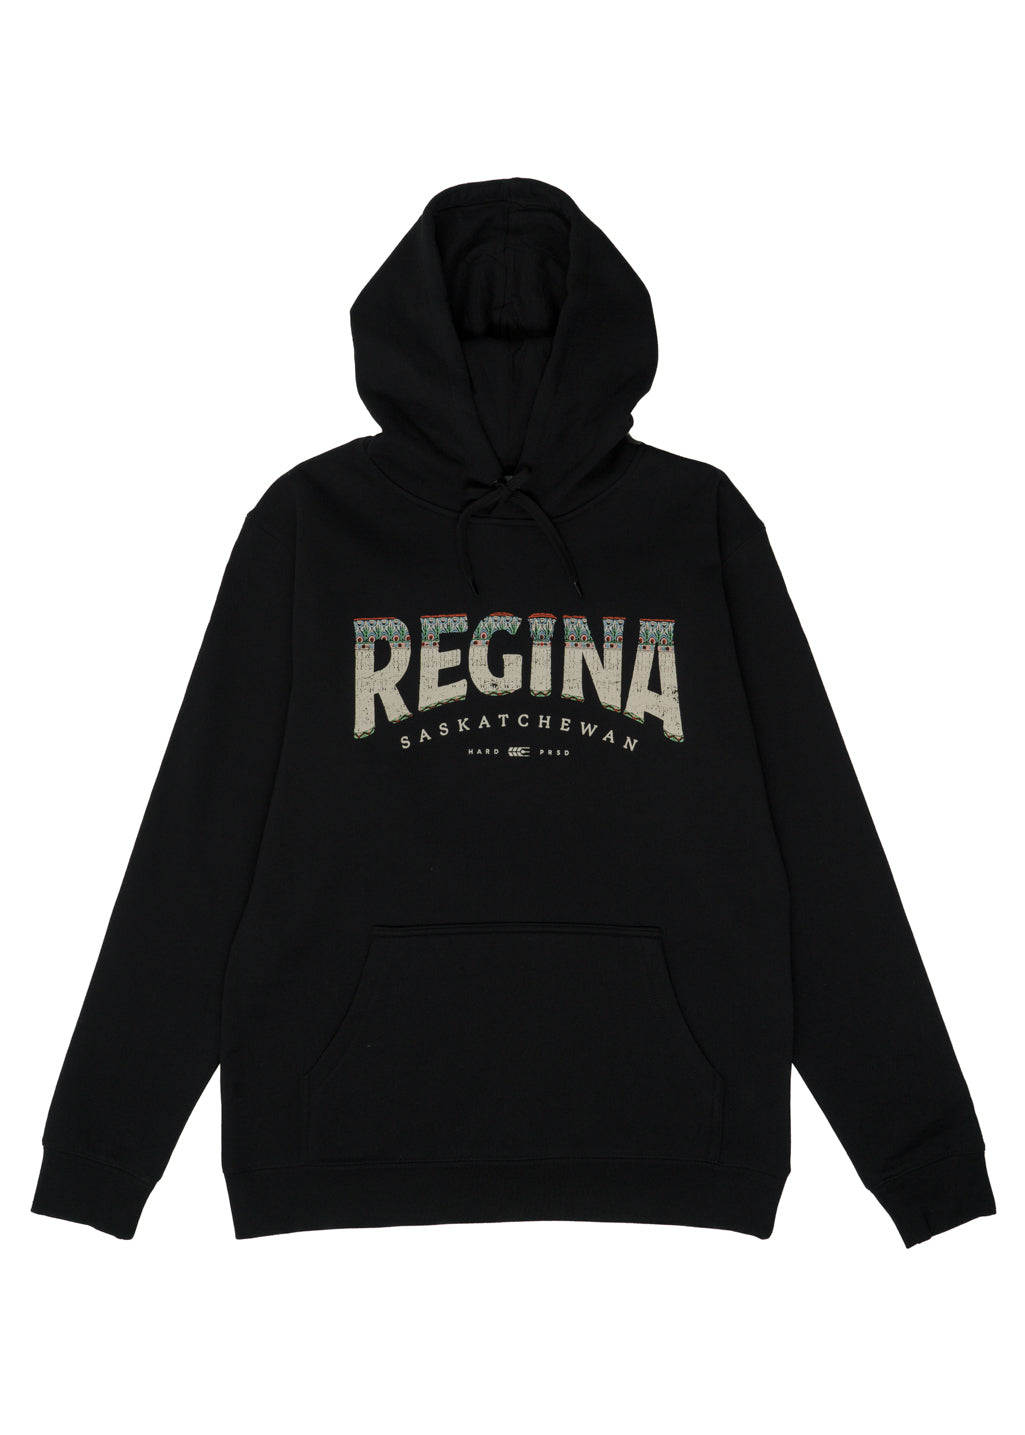 Regina Bridge Sweater | Black | Unisex - Hardpressed Print Studio Inc.